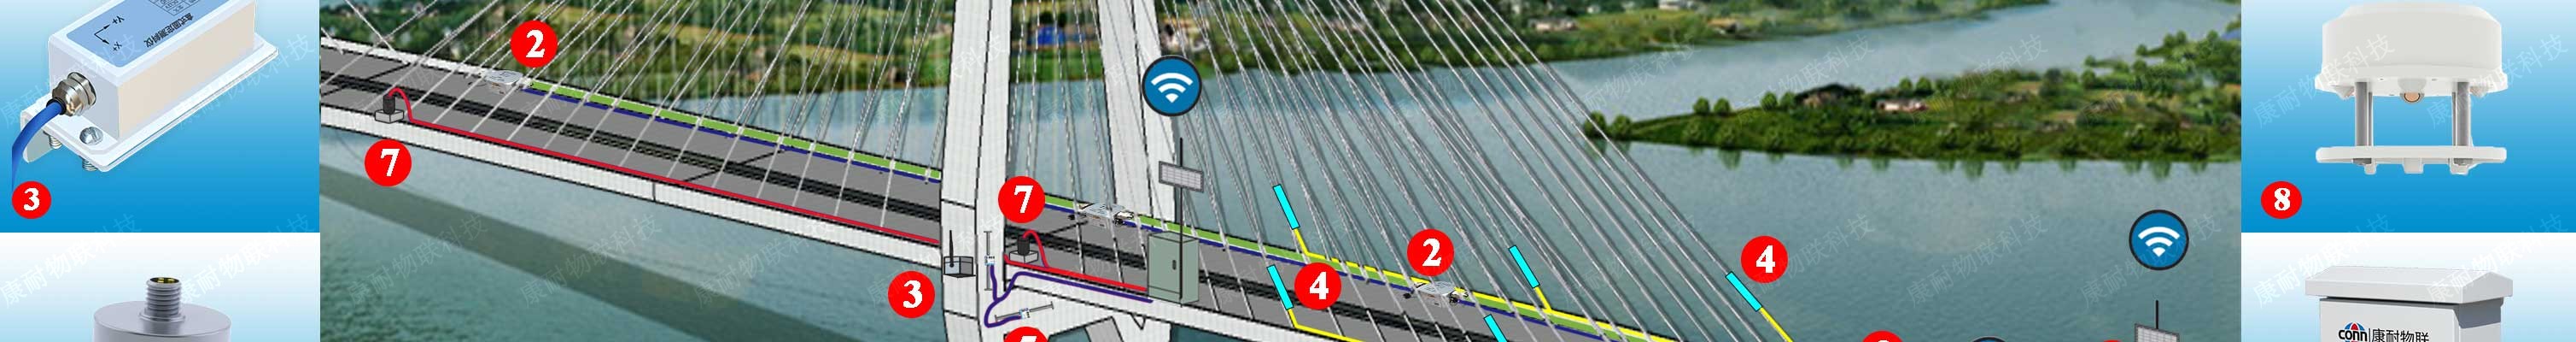 斜拉索桥梁自动化监测解决方案示意图_3.jpg